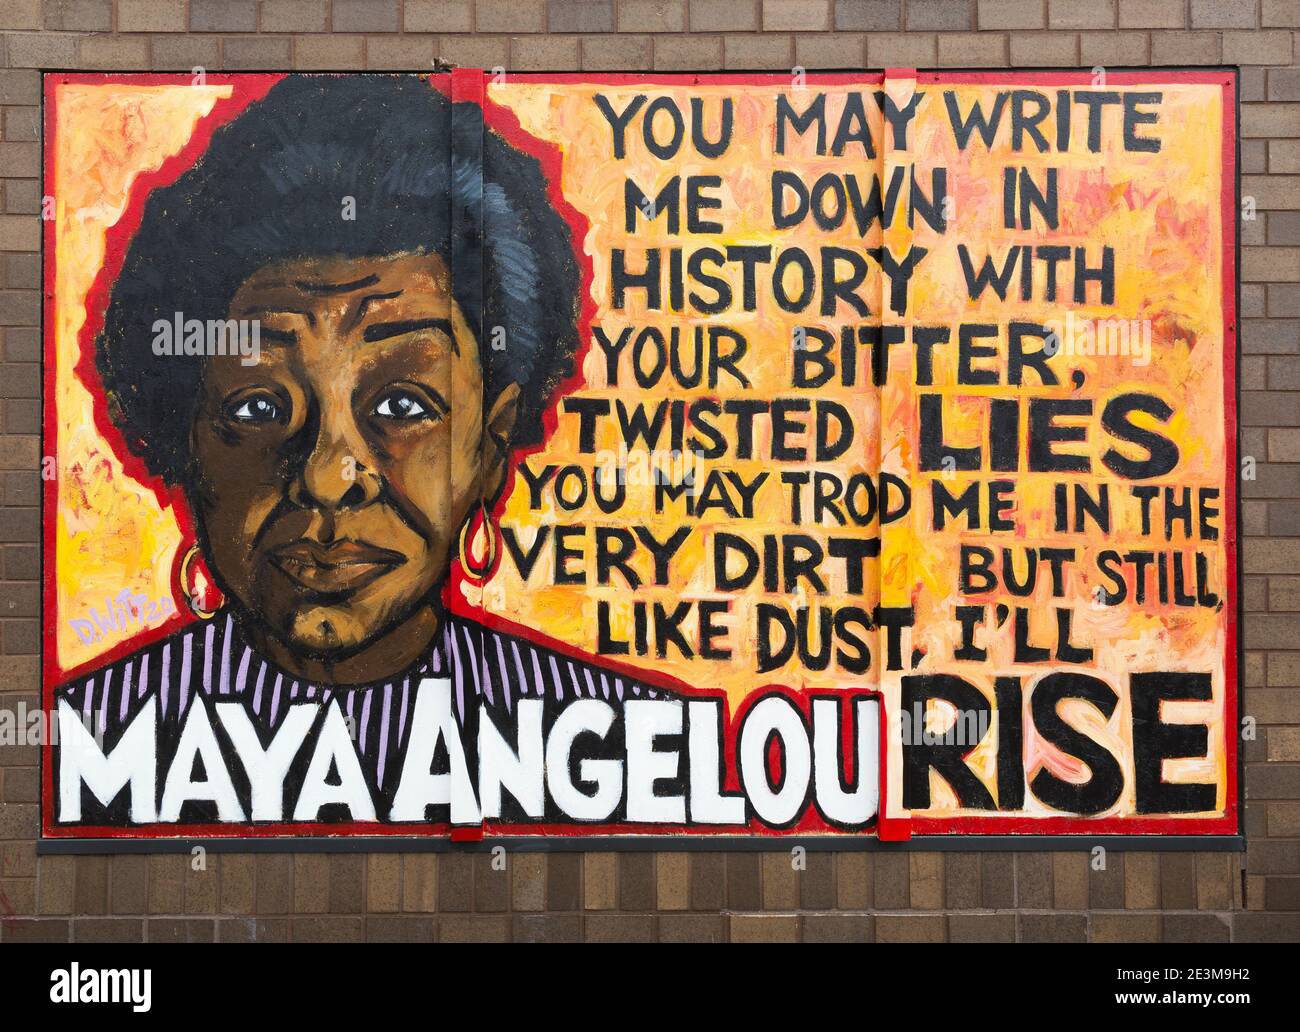 Murale sur les panneaux au-dessus d'une fenêtre de magasin avec un devis De Maya Angelou pendant les troubles civils après le meurtre De George Floyd à Minneapolis Banque D'Images